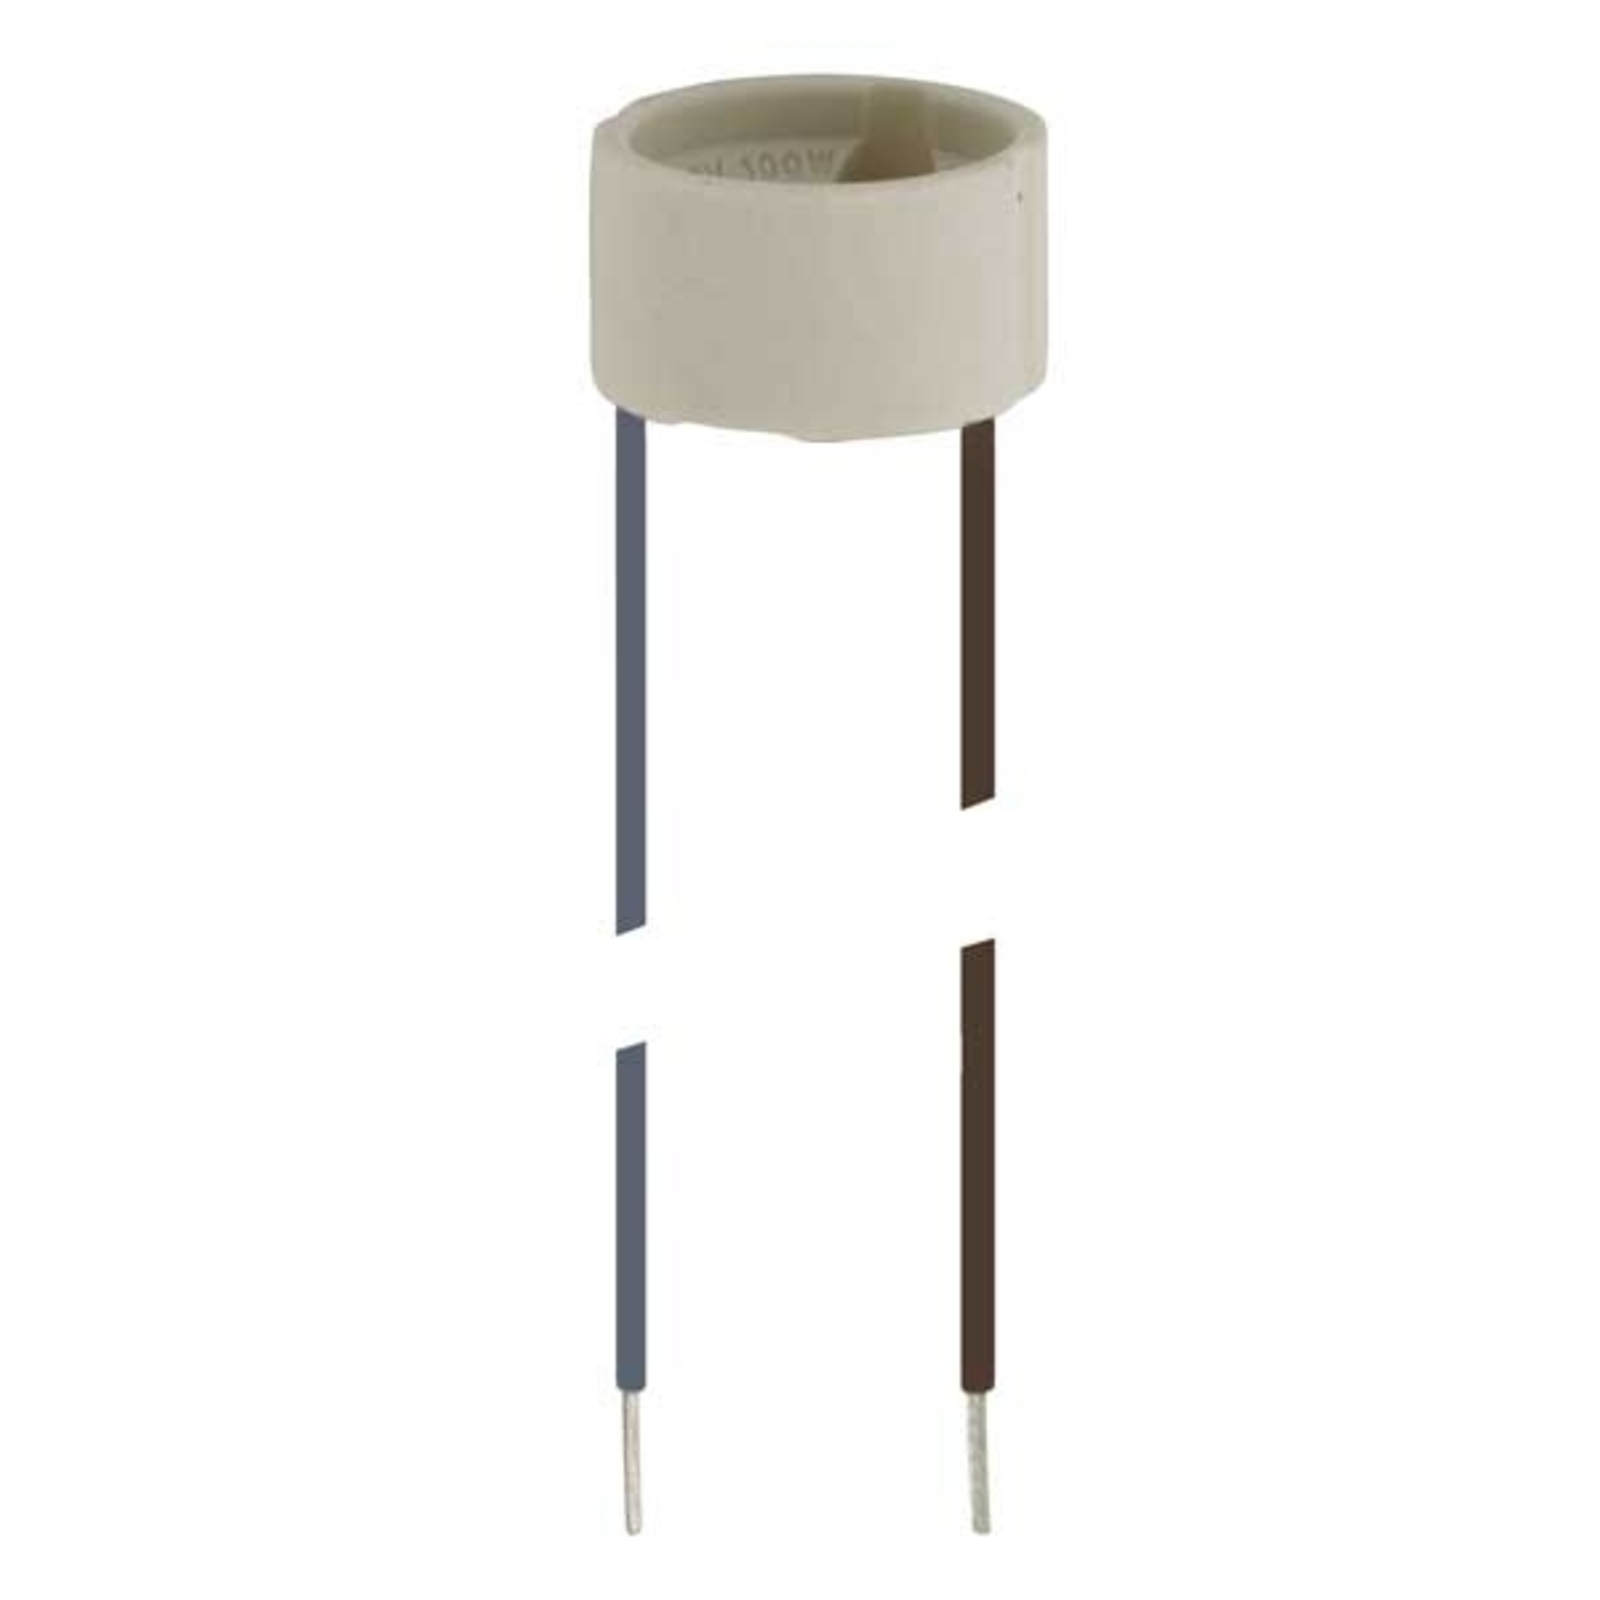 Socket for HV halogen lamp, base GU10